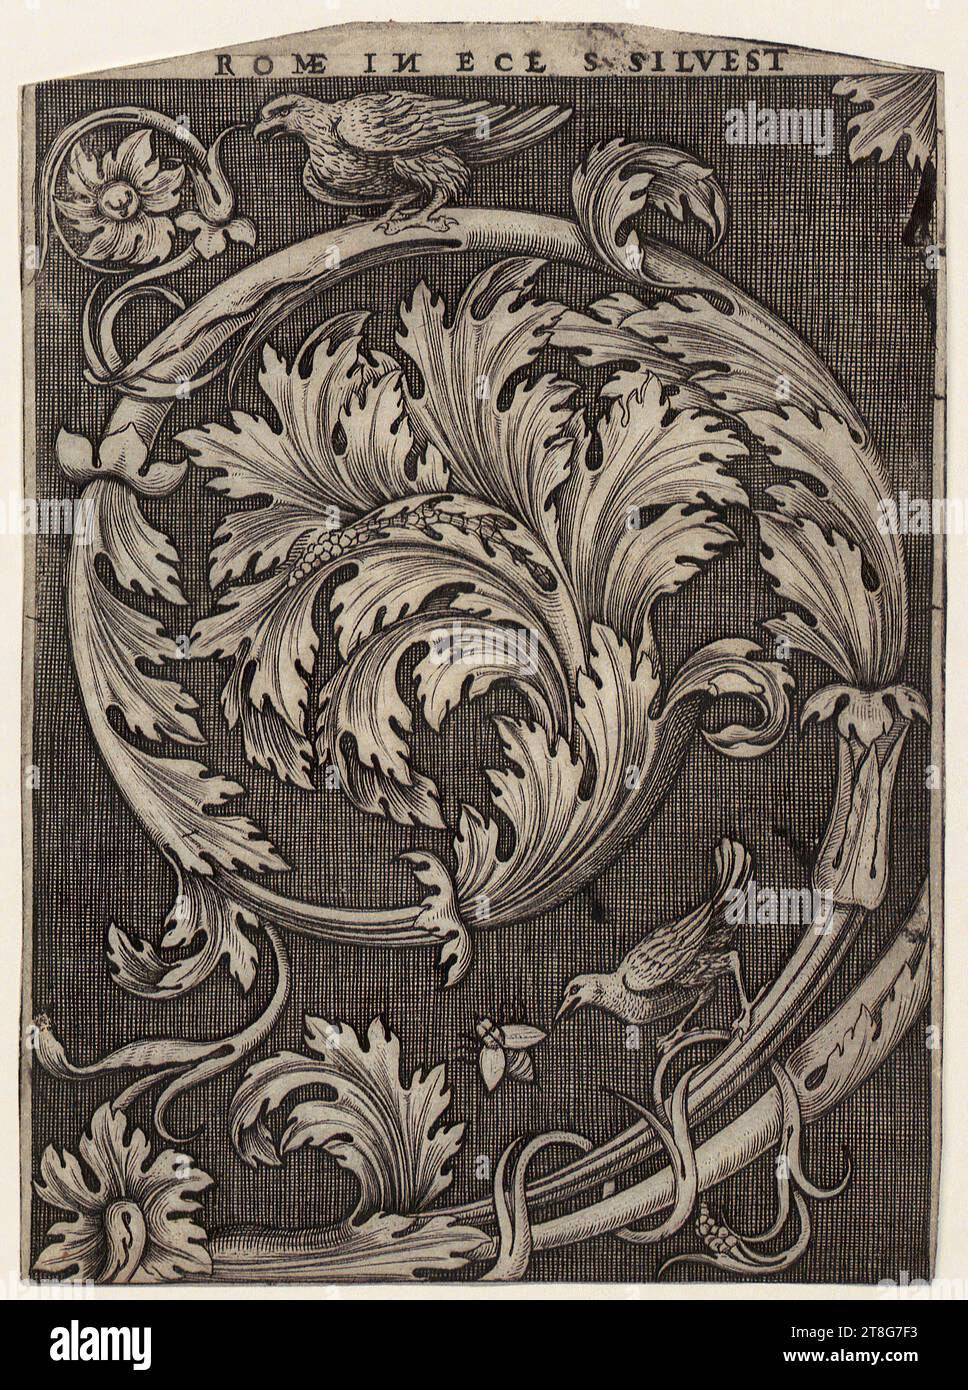 Agostino dei Musi (gén. Agostino Veneziano) (1490 UM - après 1536), attribué, gravure ornementale avec feuillage, origine du support d'impression : 1515 - 1536, gravure sur cuivre, taille de la feuille : 17,9 x 13,1 cm (rogné en haut et en bas) » inscrit en haut au centre 'ROMÆ IN N image miroir ECL. S. SILVEST Banque D'Images